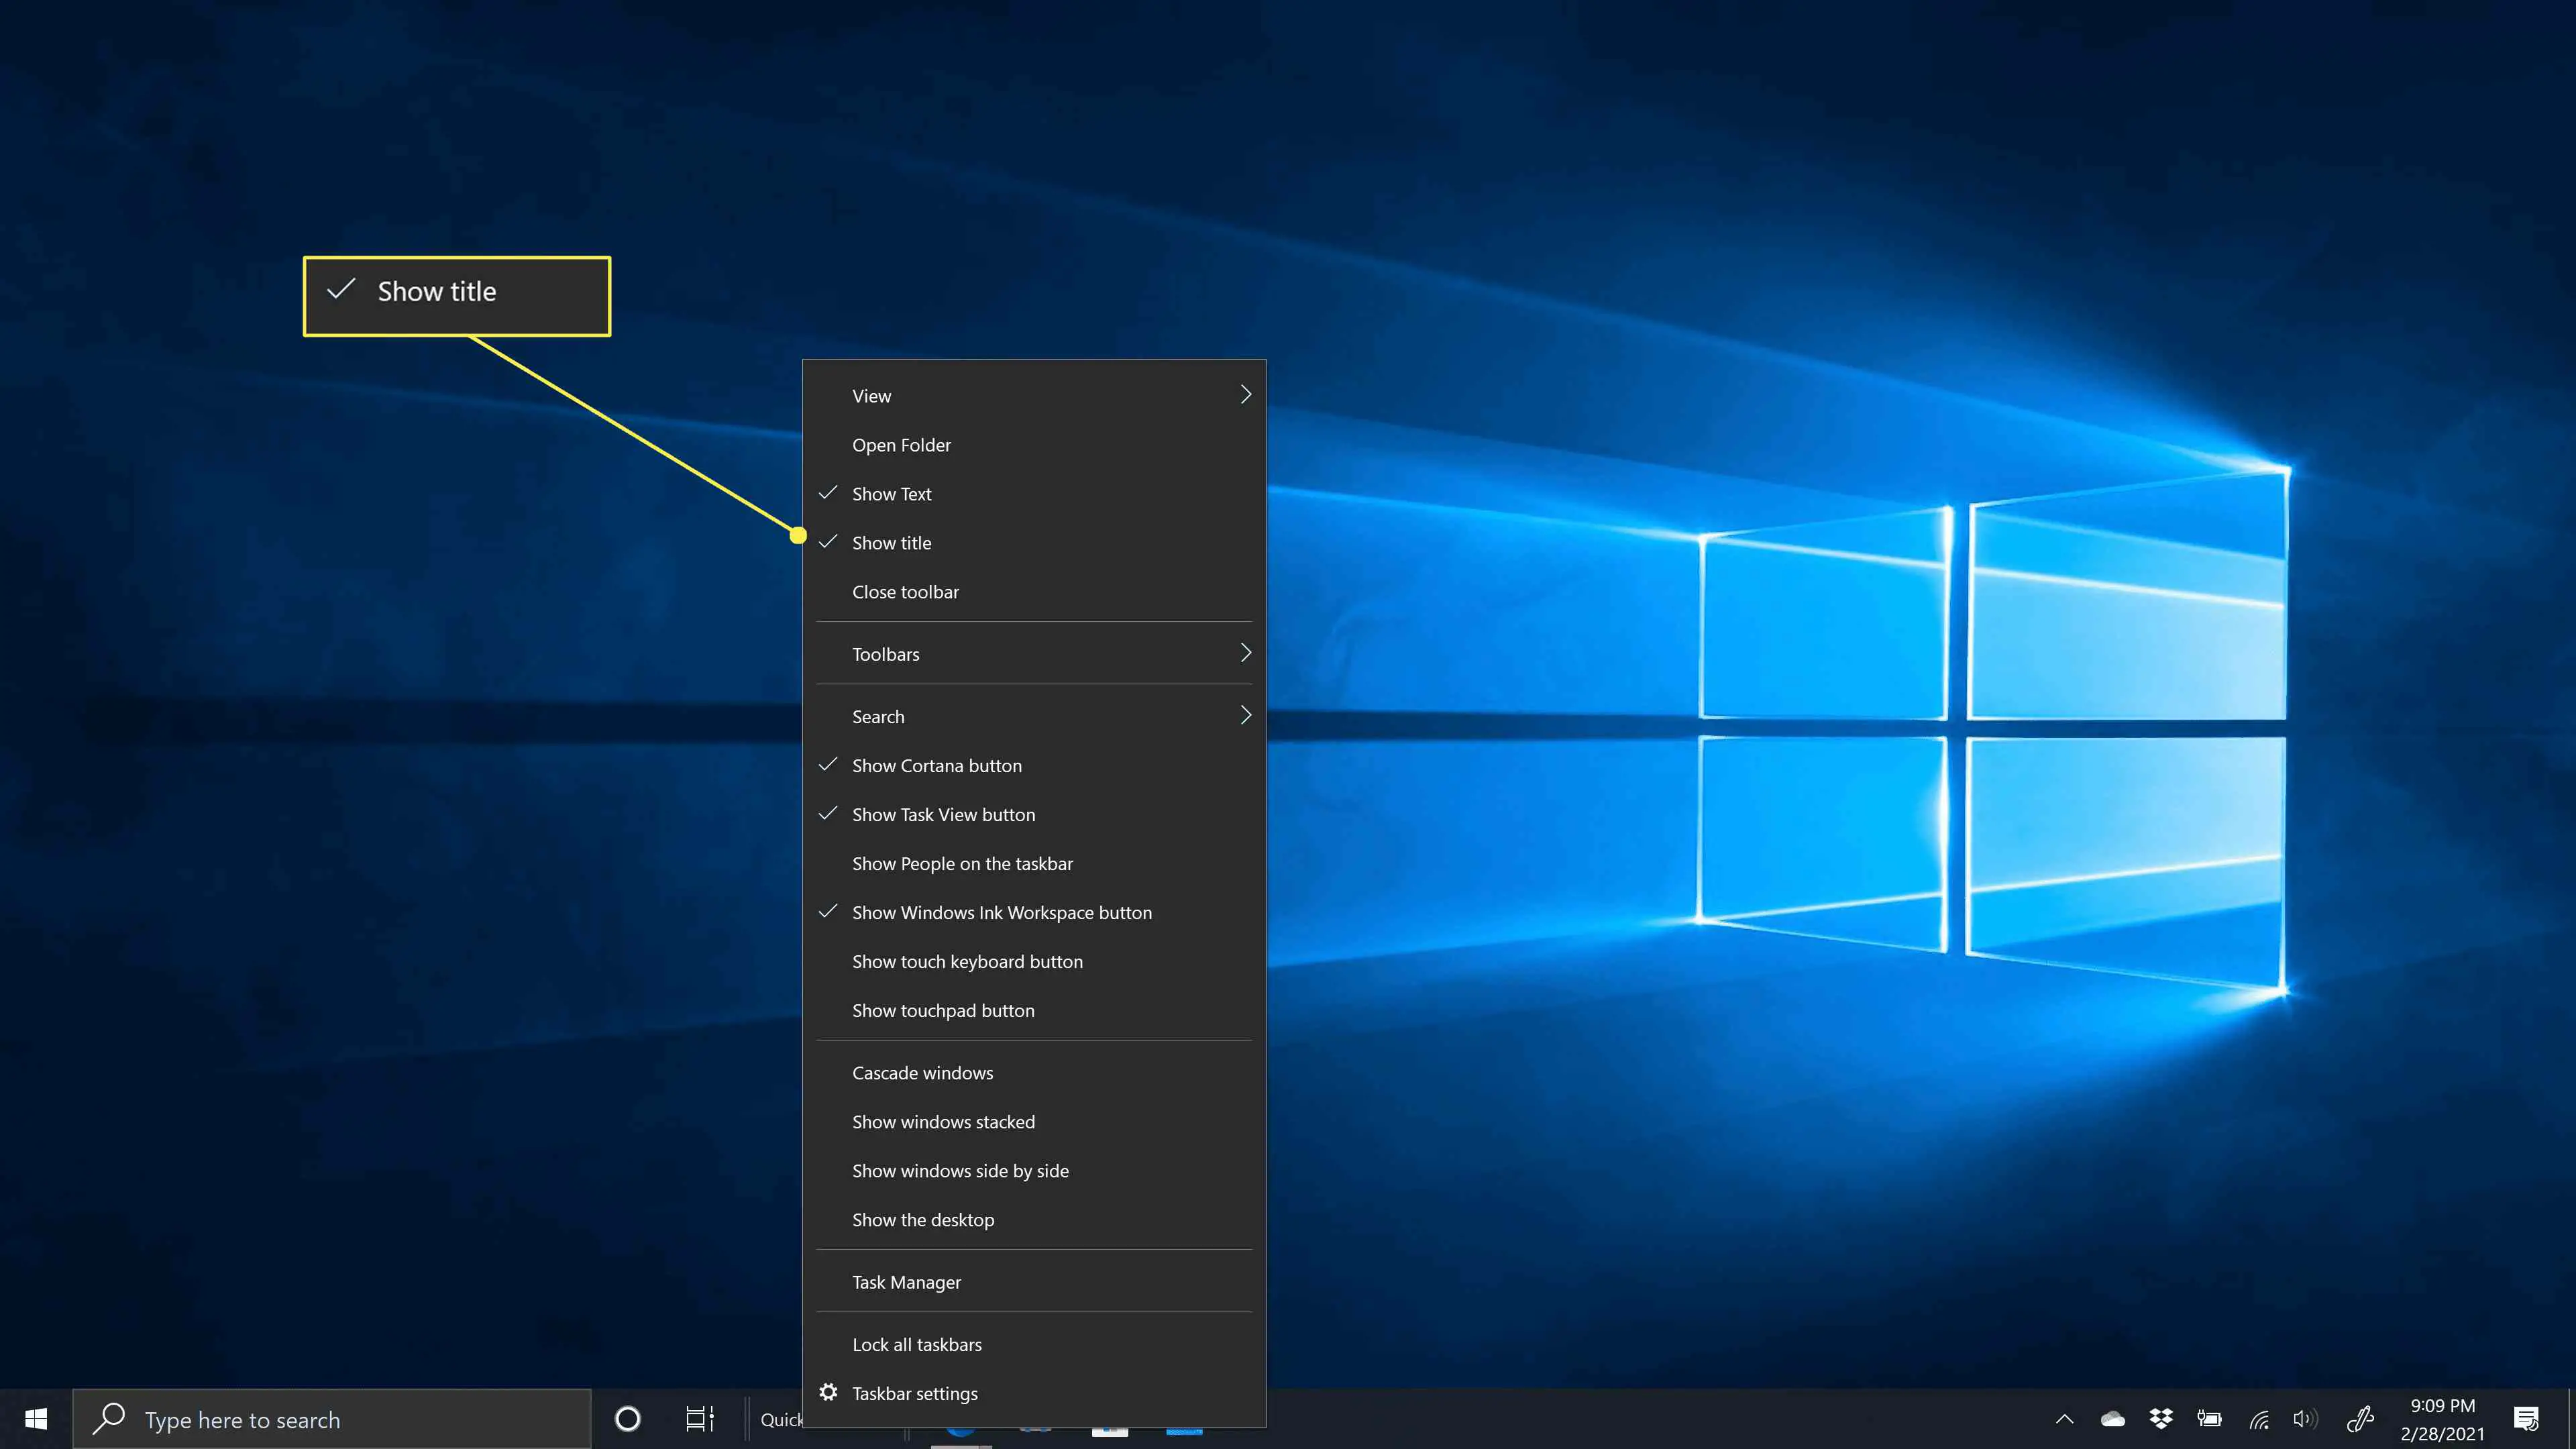 Mostrar título realçado no menu da barra de tarefas do Windows 10.